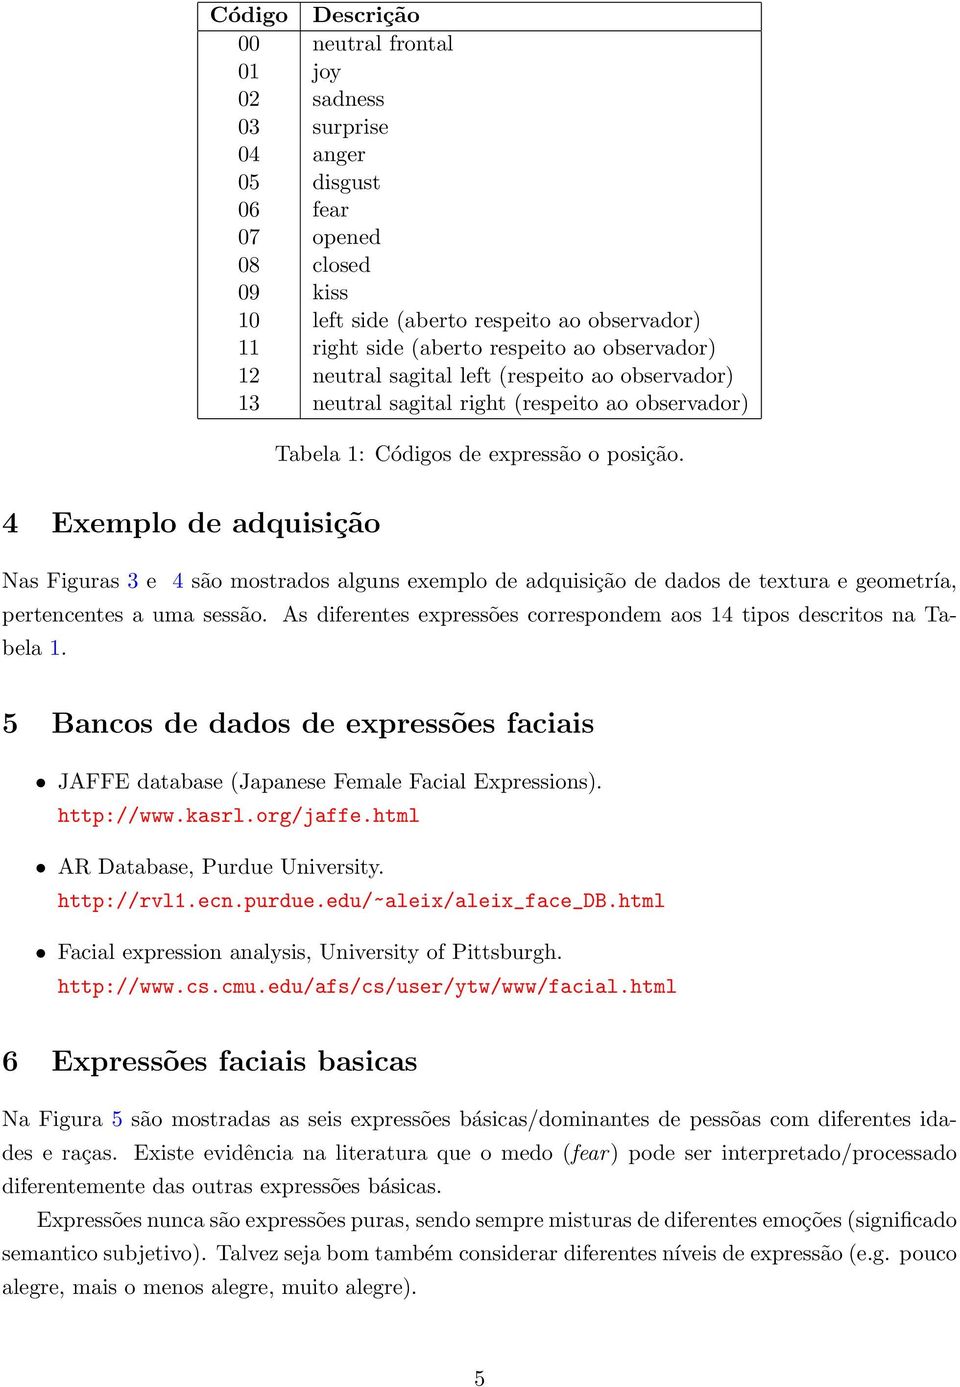 4 Exemplo de adquisição Nas Figuras 3 e 4 são mostrados alguns exemplo de adquisição de dados de textura e geometría, pertencentes a uma sessão.